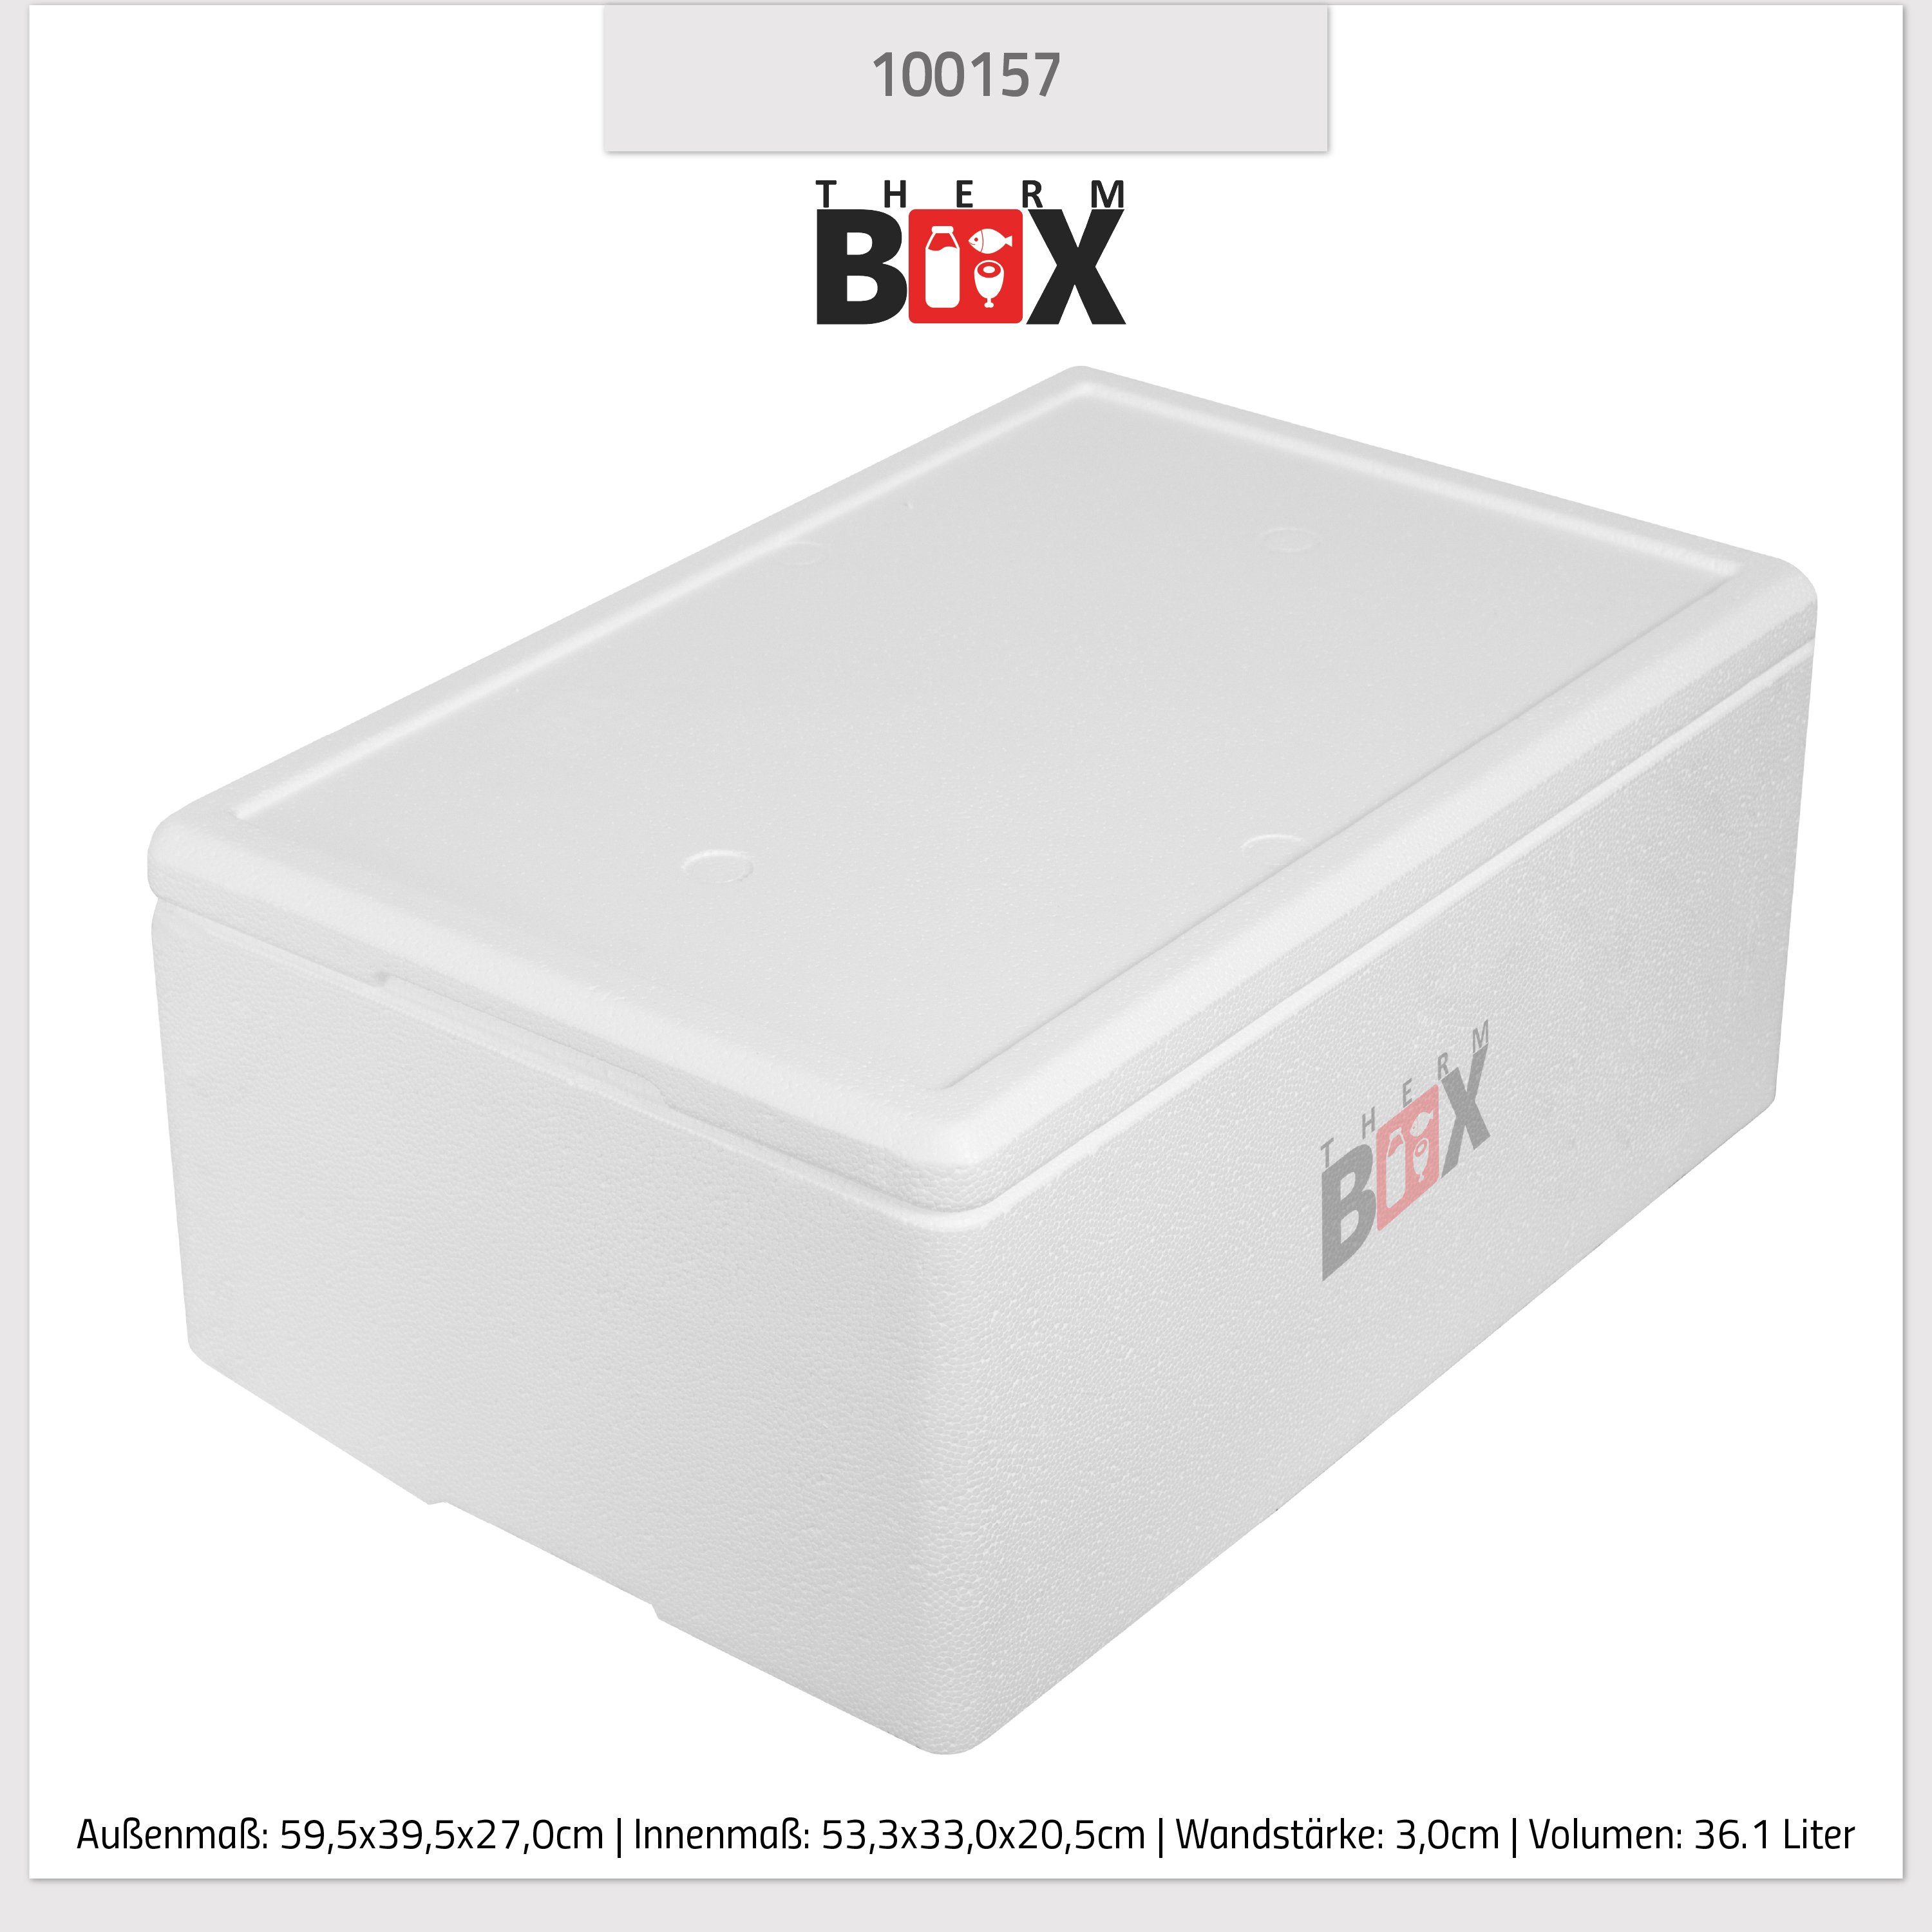 36W 3cm Kühlbox im Wand: Karton), THERM-BOX mit (1, Innenmaß:53x33x20cm, Thermobox Isolierbox Thermobehälter Styroporbox Box Deckel Warmhaltebox 0-tlg., Wiederverwendbar Styropor-Verdichtet, 36,1L